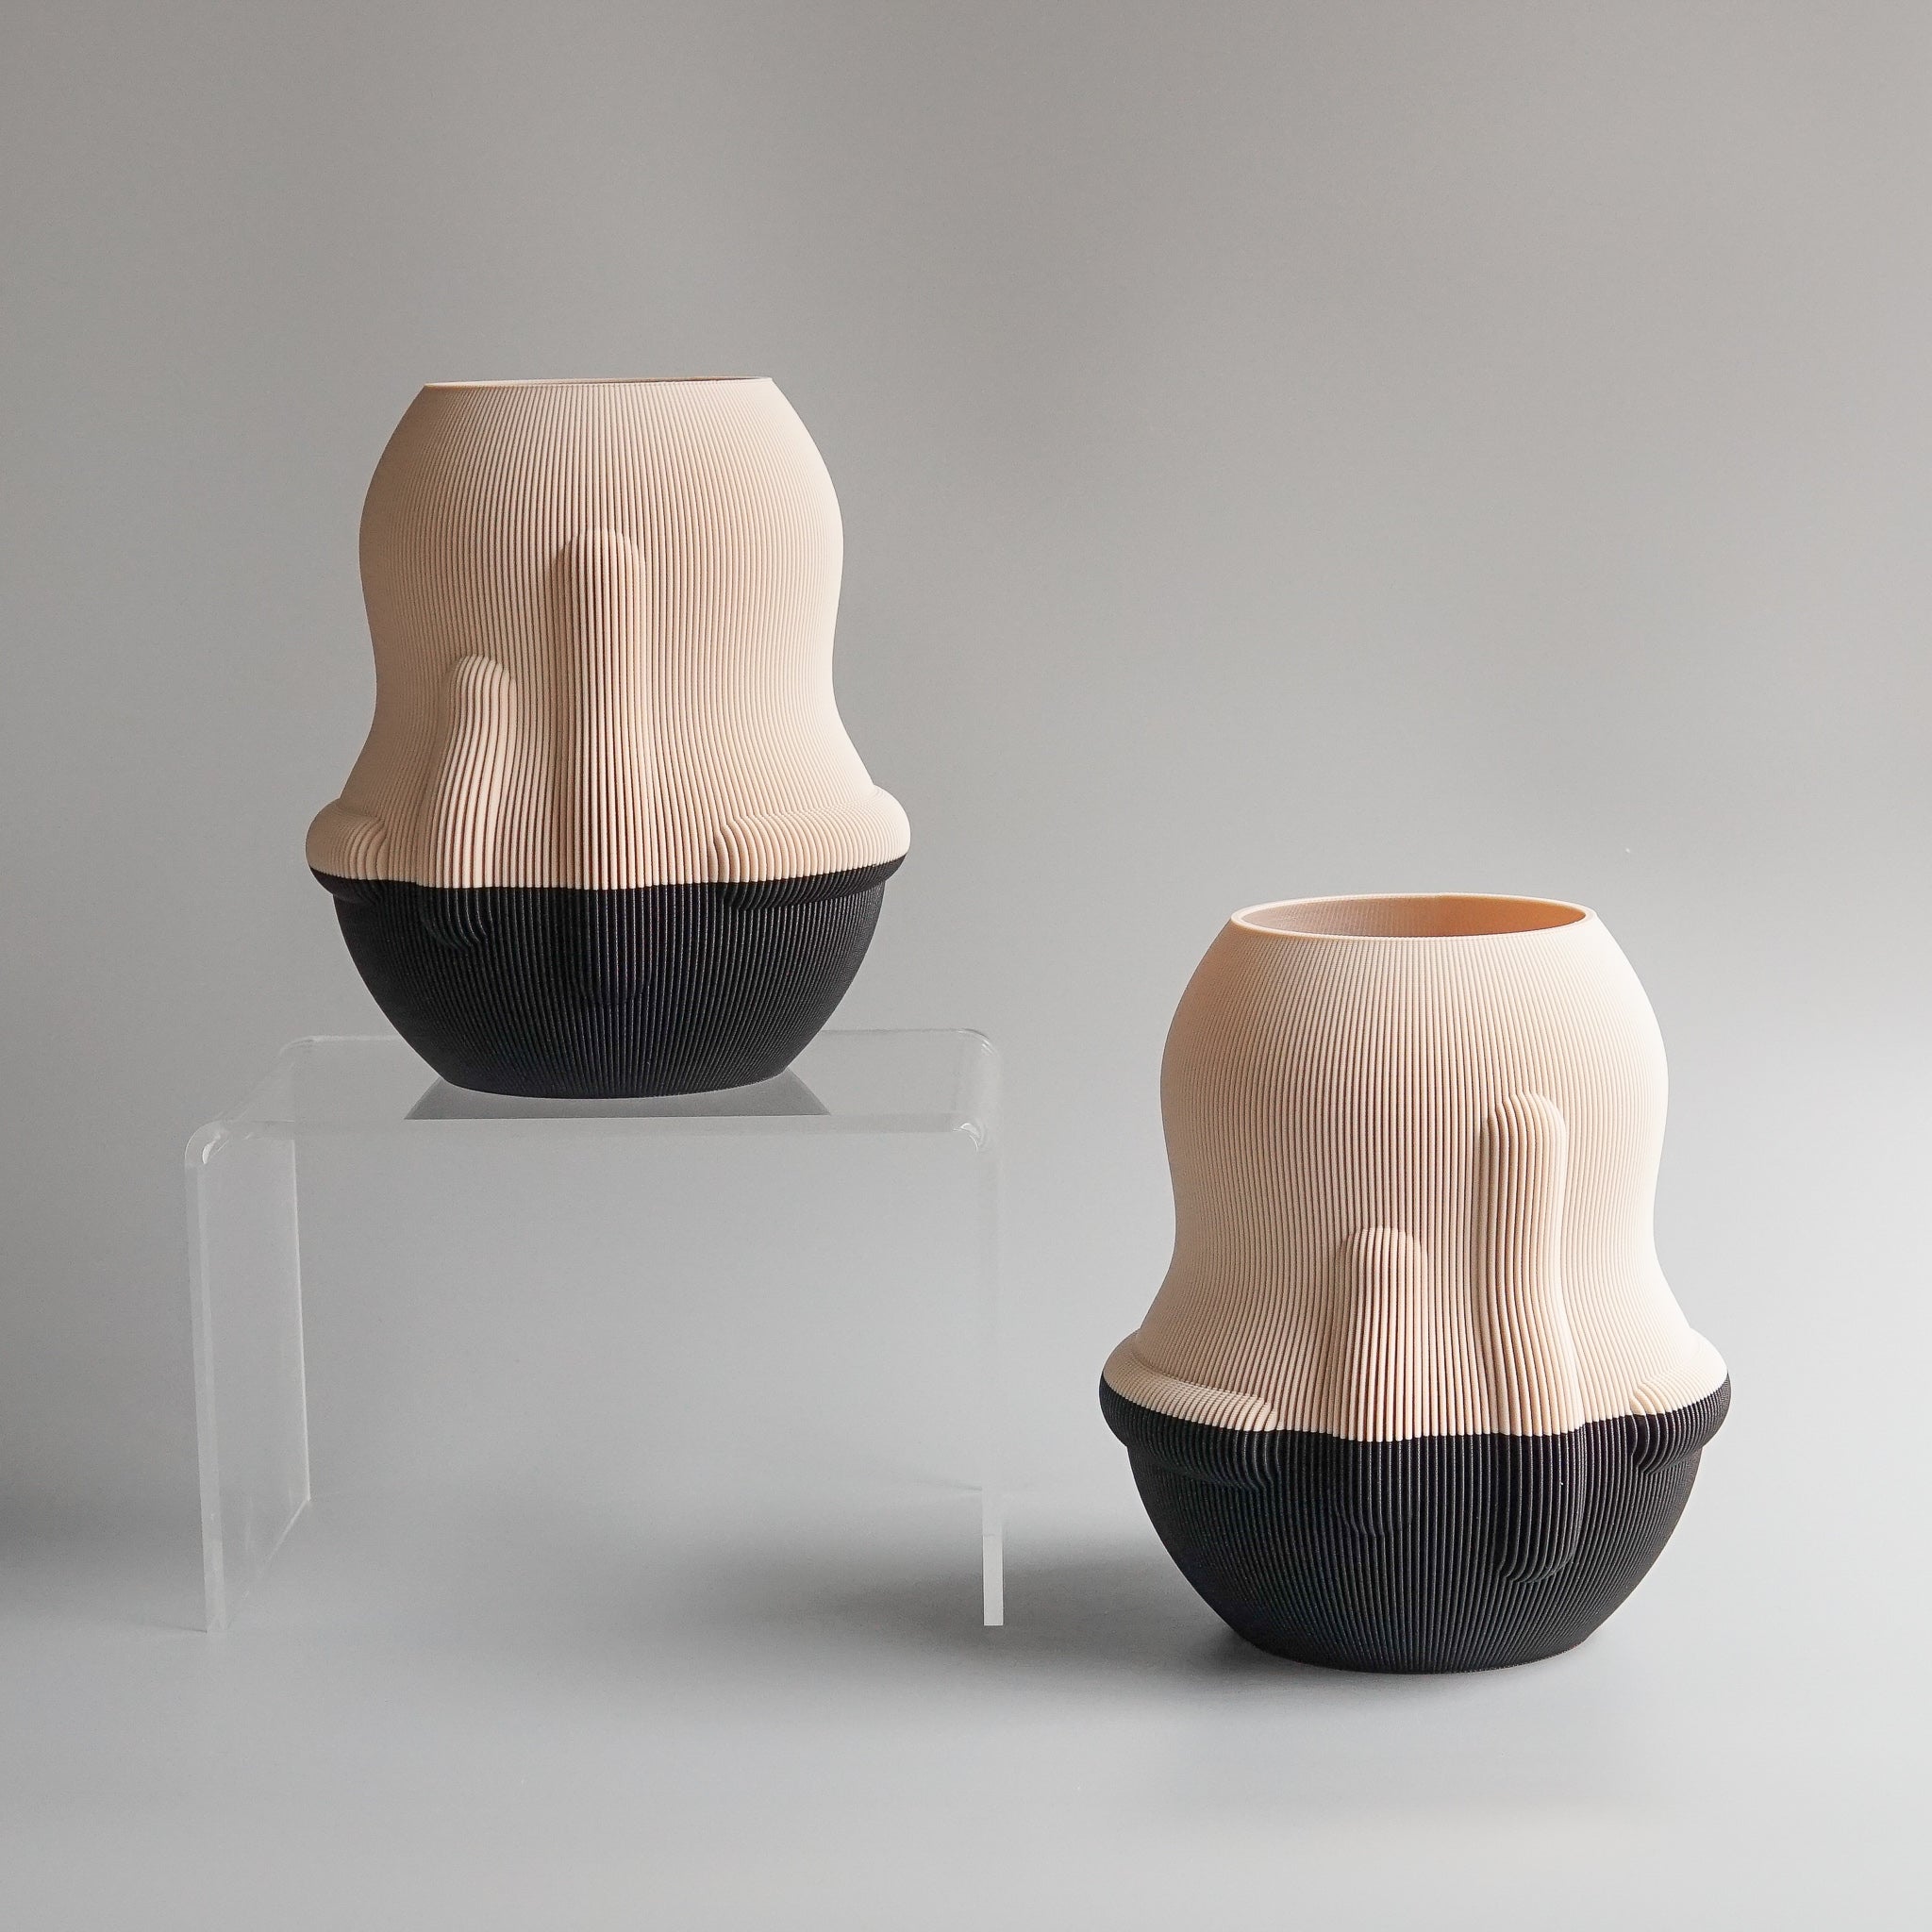 UAU Project: Beige/Black Eggplant Vase (Polish Artist)